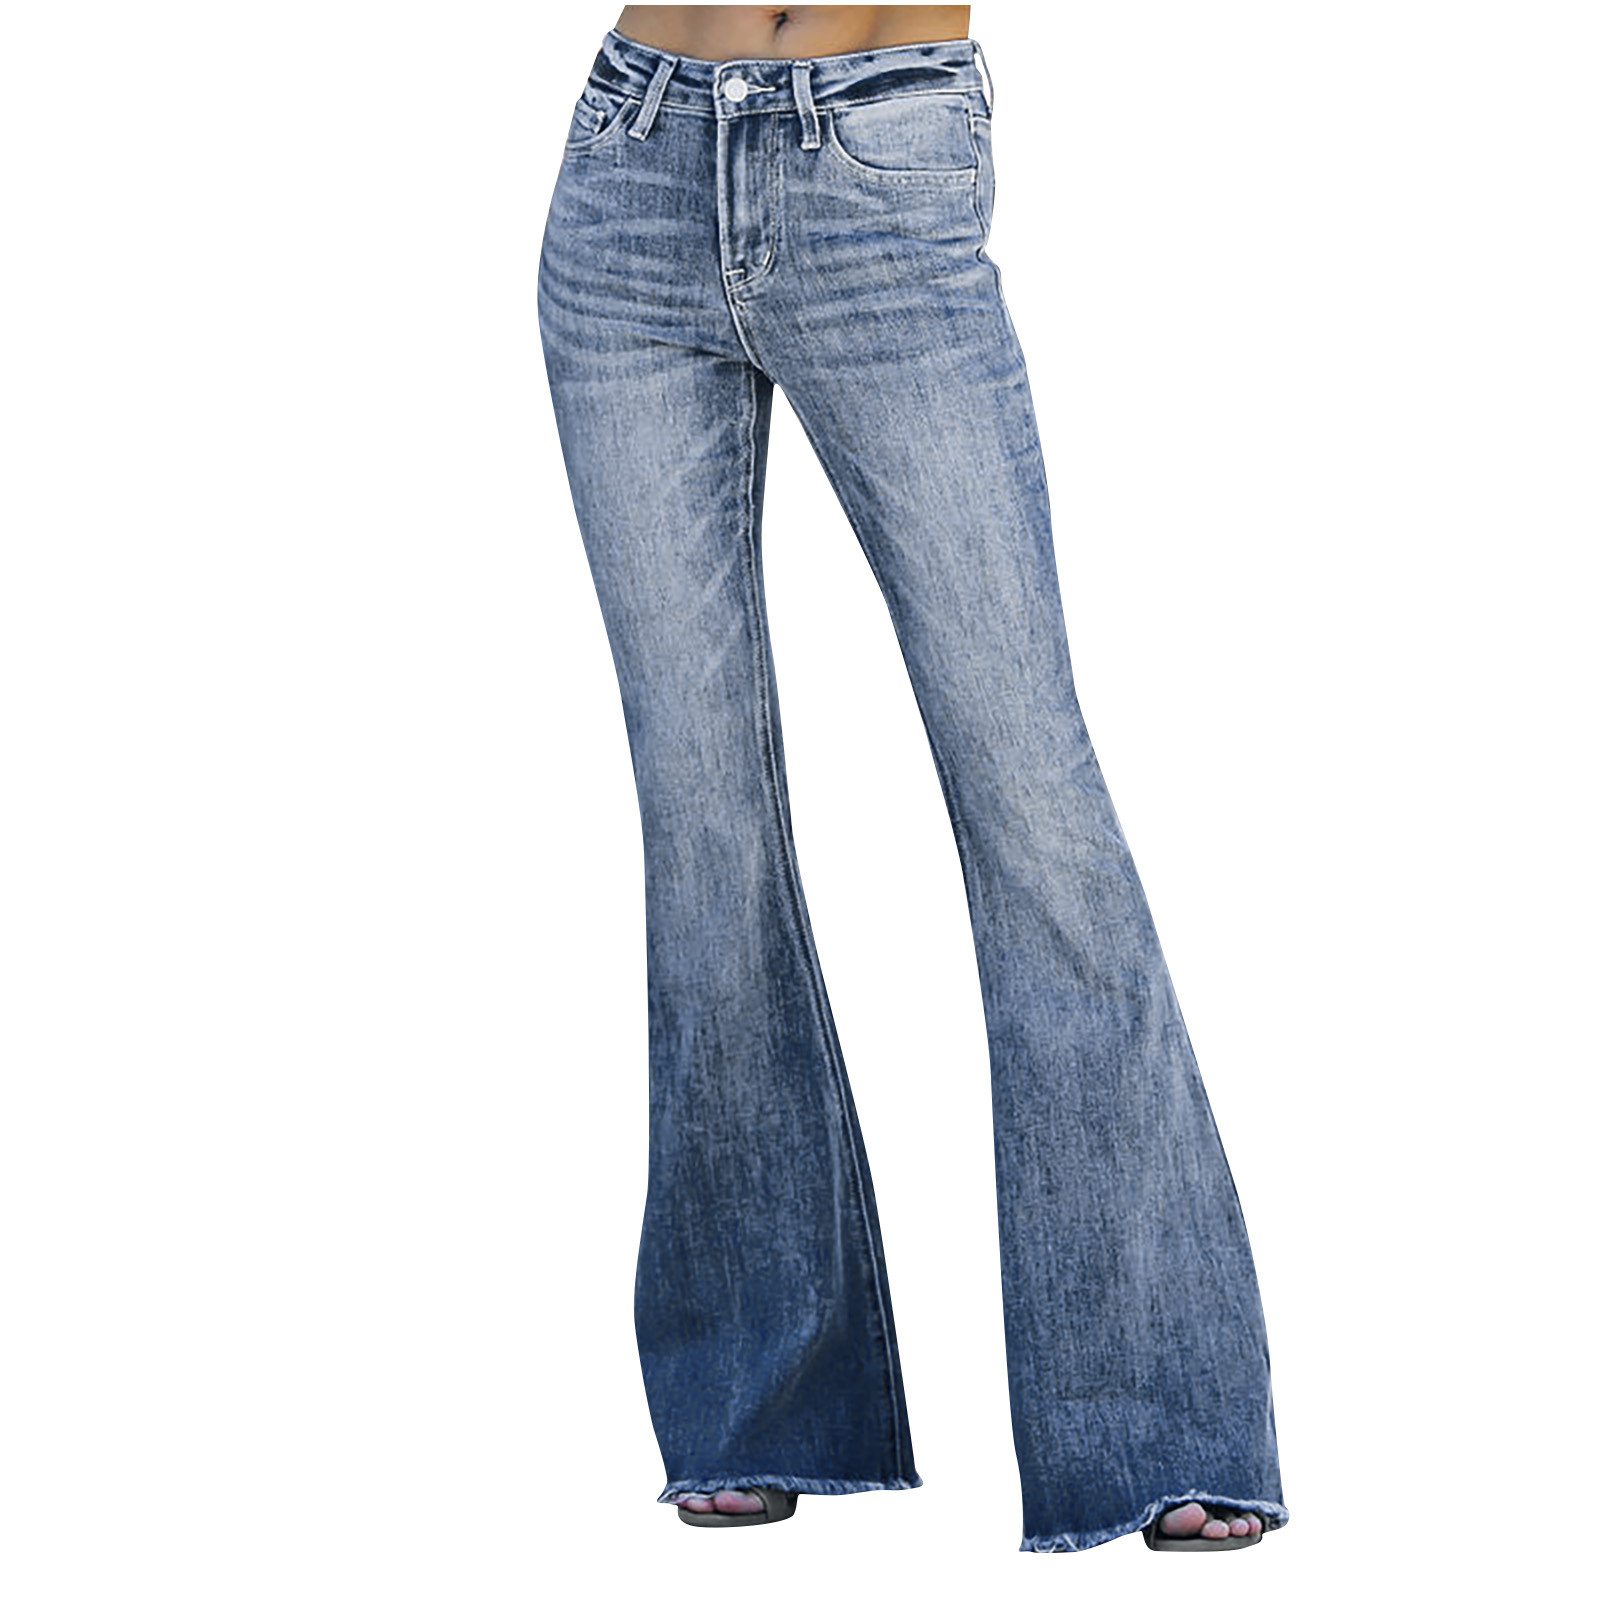 Augper Flare Jeans for Women, Women's High Waist Stretch Bell Bottom ...